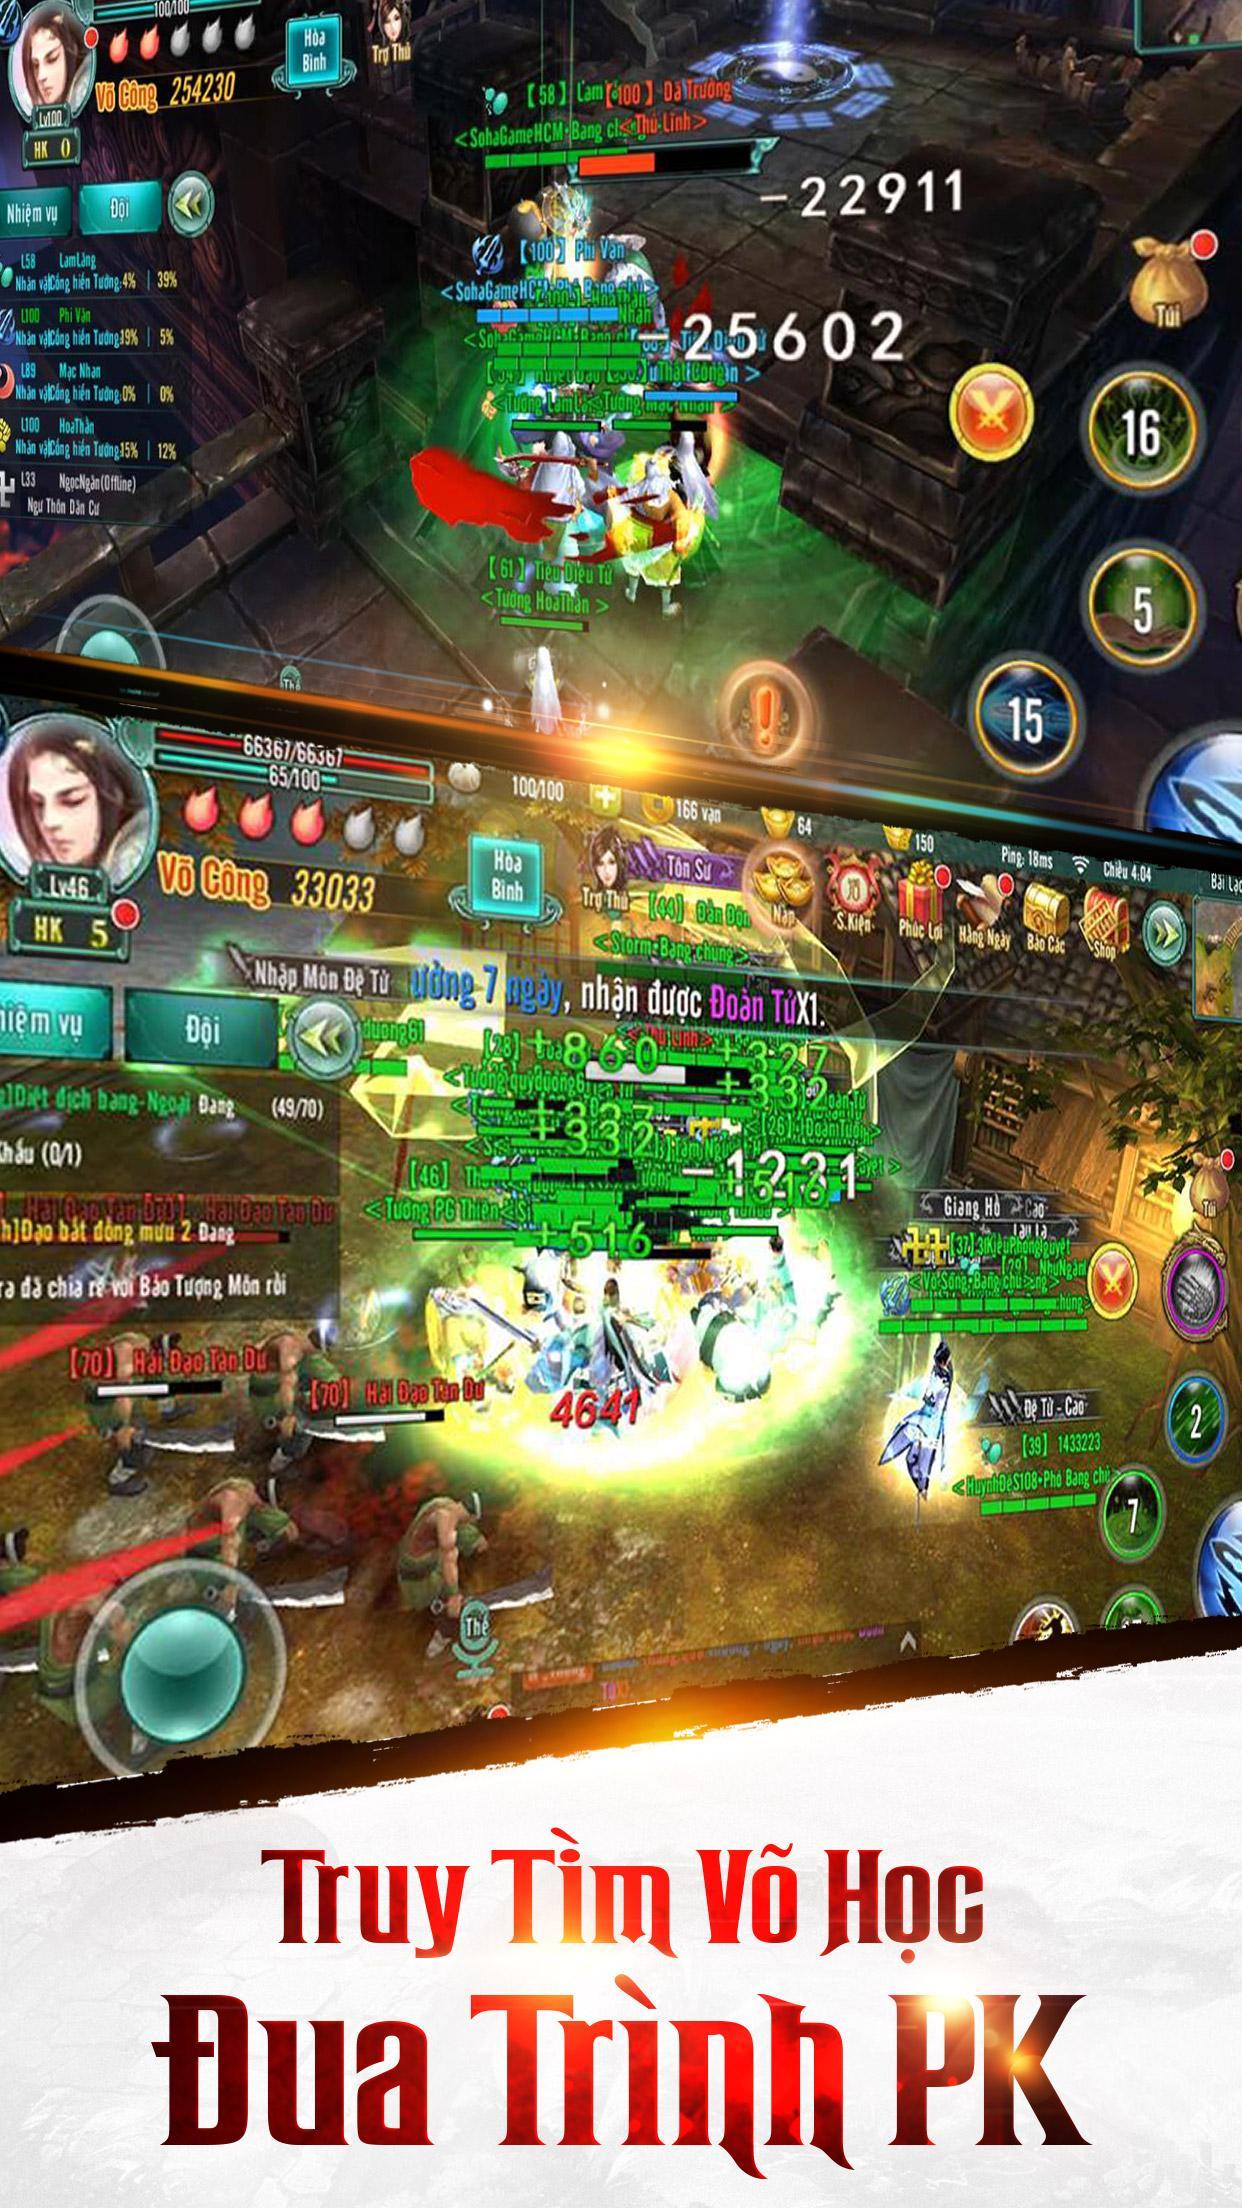 Screenshot 1 of Tieu Dao 3D - Во Лам Ленх 3.0.5